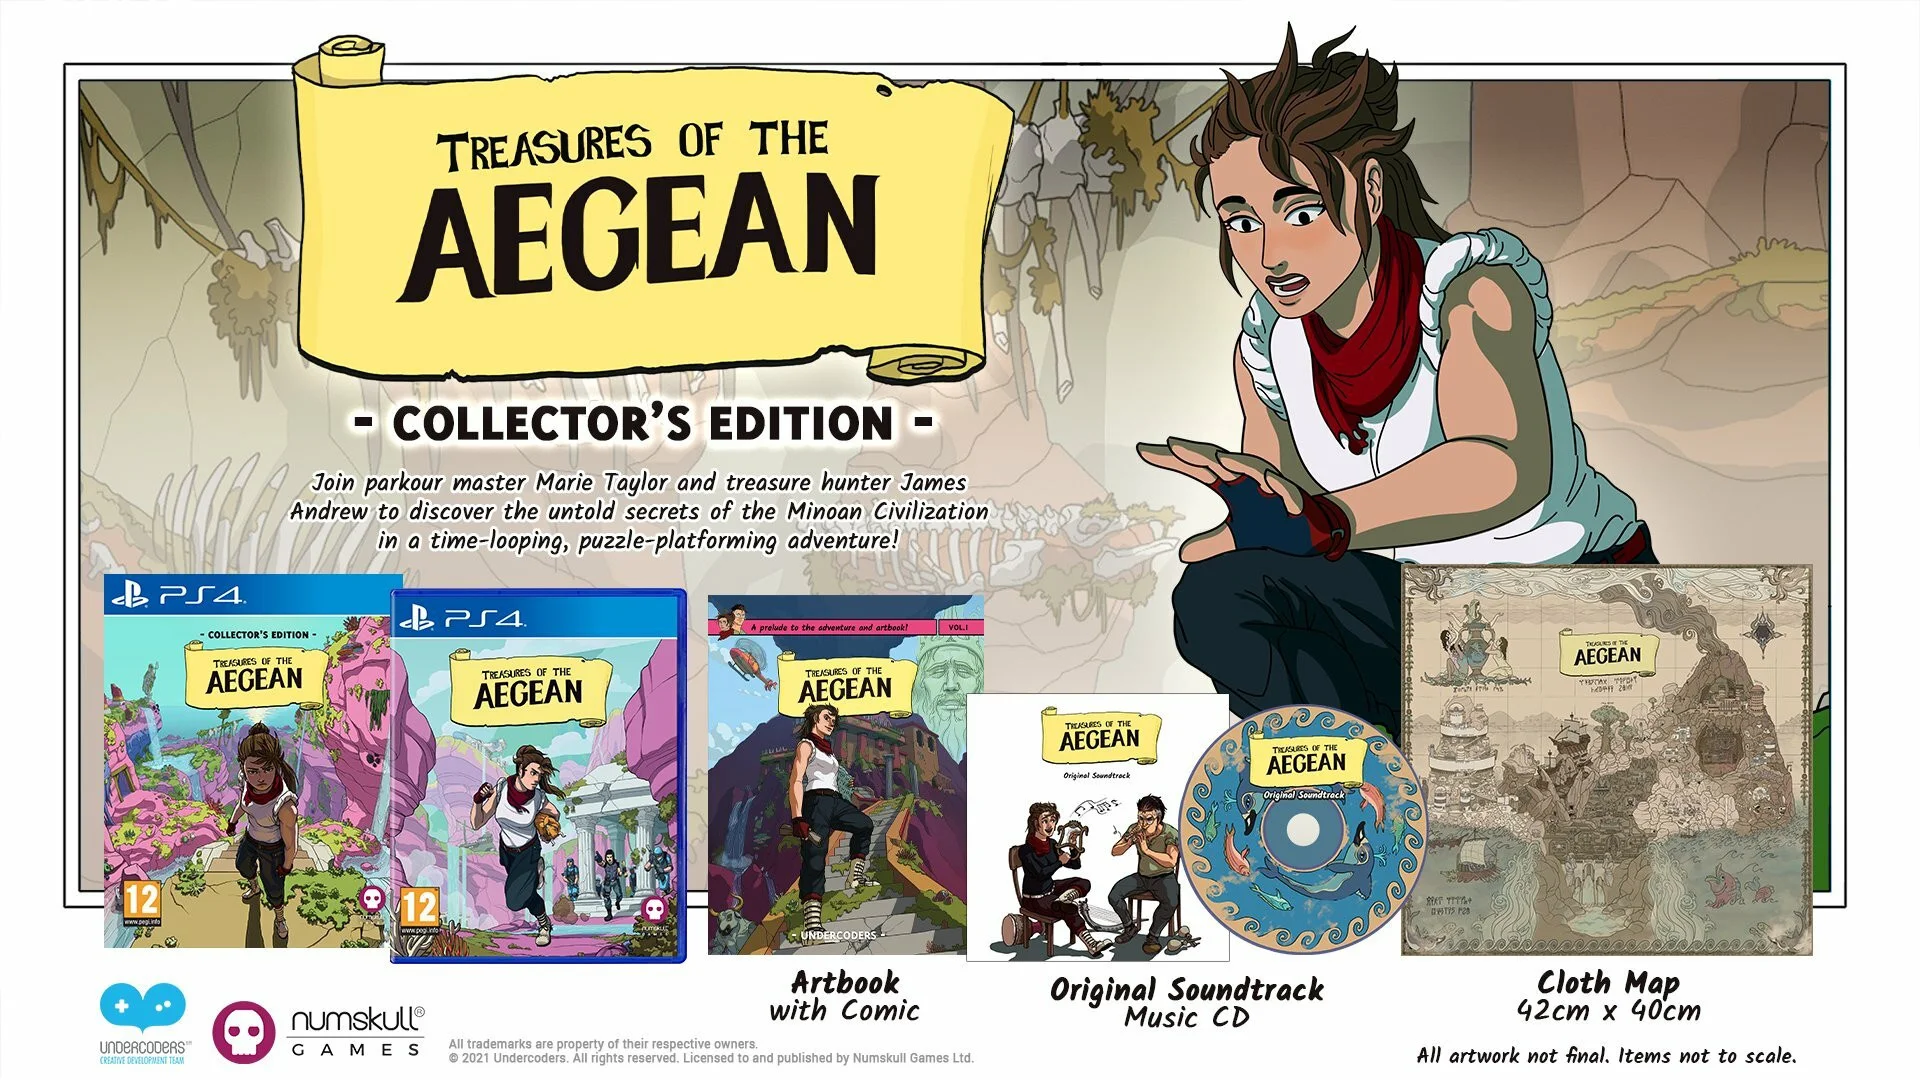 Метроидвания Treasures of the Aegean выходит на PC и консолях 11 ноября - фото 1